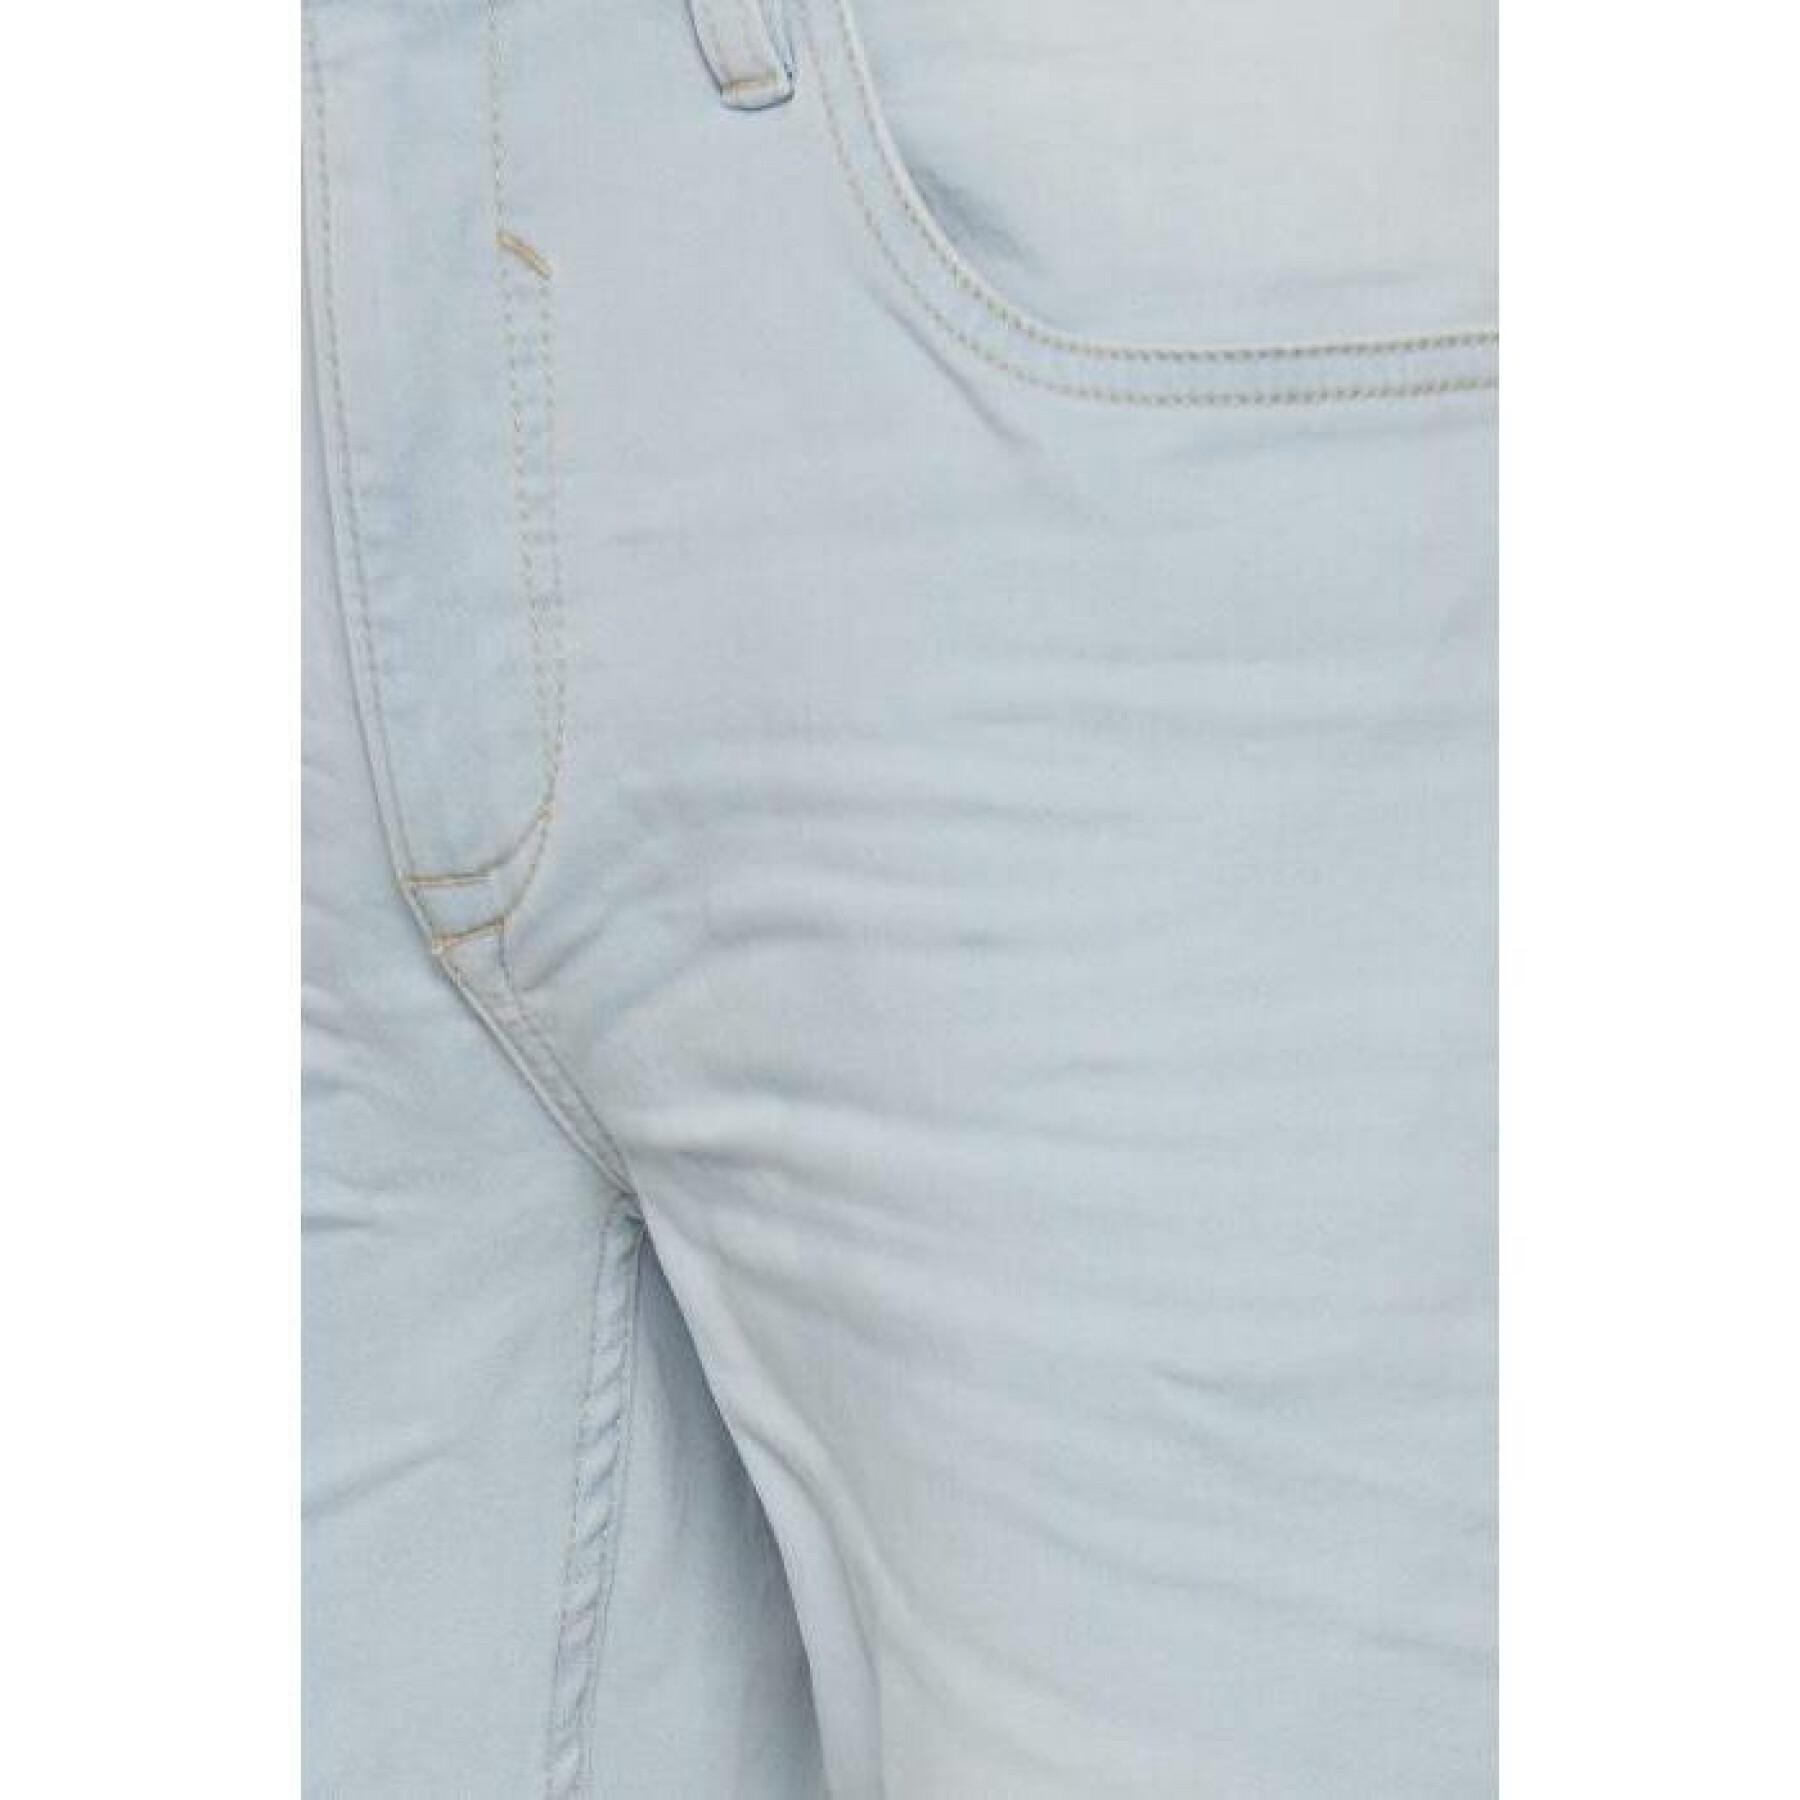 Avsmalnande jeans för kvinnor Blend Jogg - Twister